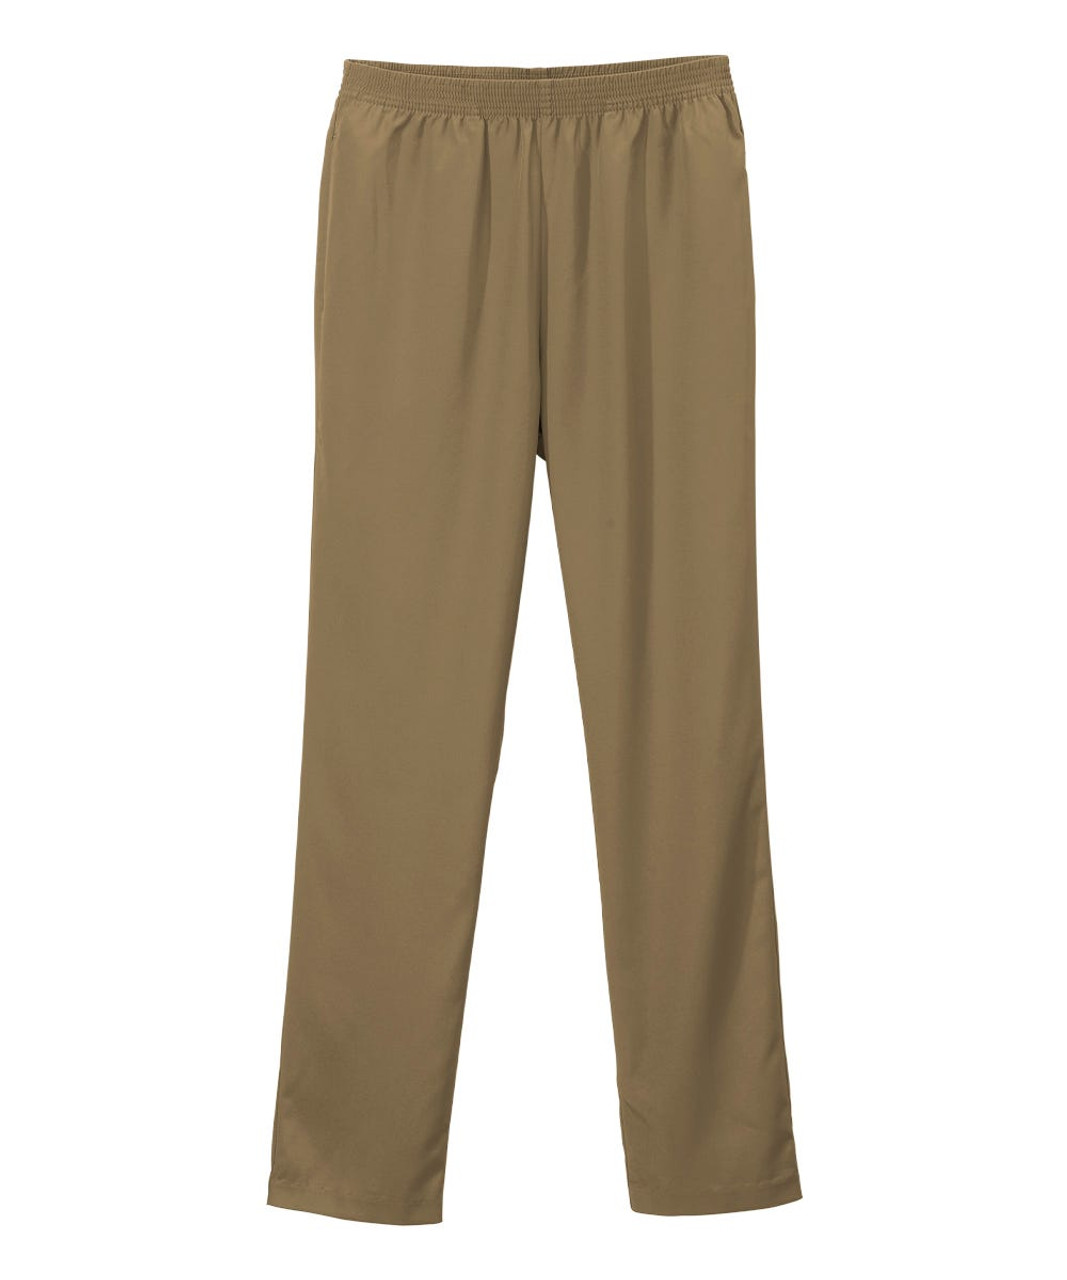 Silverts SV13090 Senior Women's Pull-on Gabardine Pant - Elastic Waist Pants for Women Taupe, Size=44, SV13090-TAUW-44